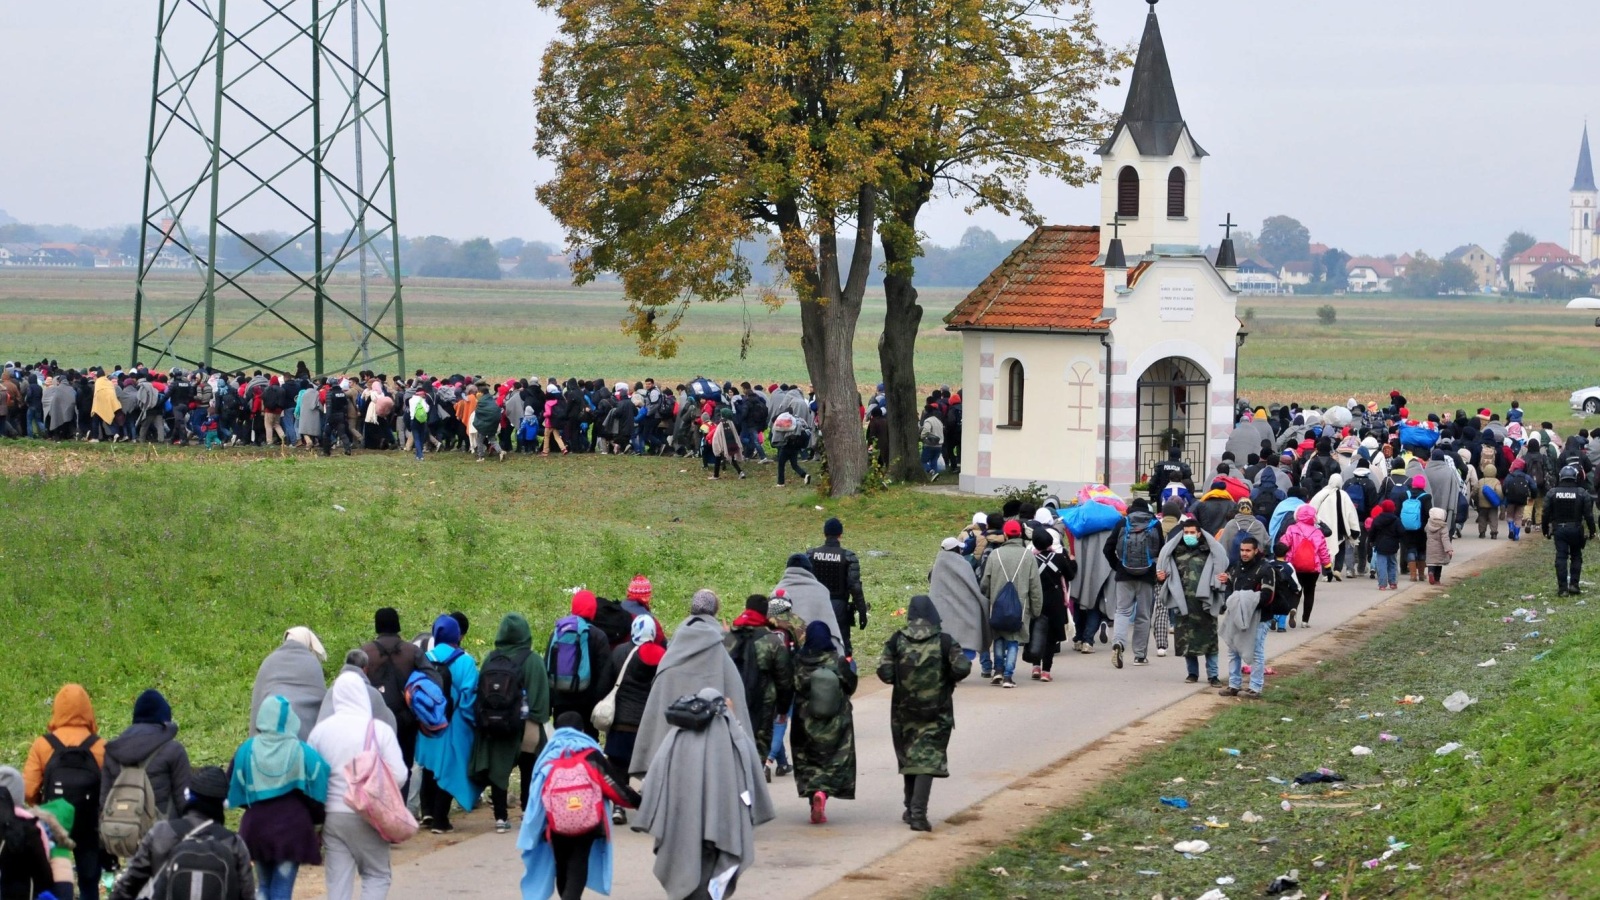 لاجئون يعبرون من كرواتيا إلى سلوفينيا (لأوروبية)